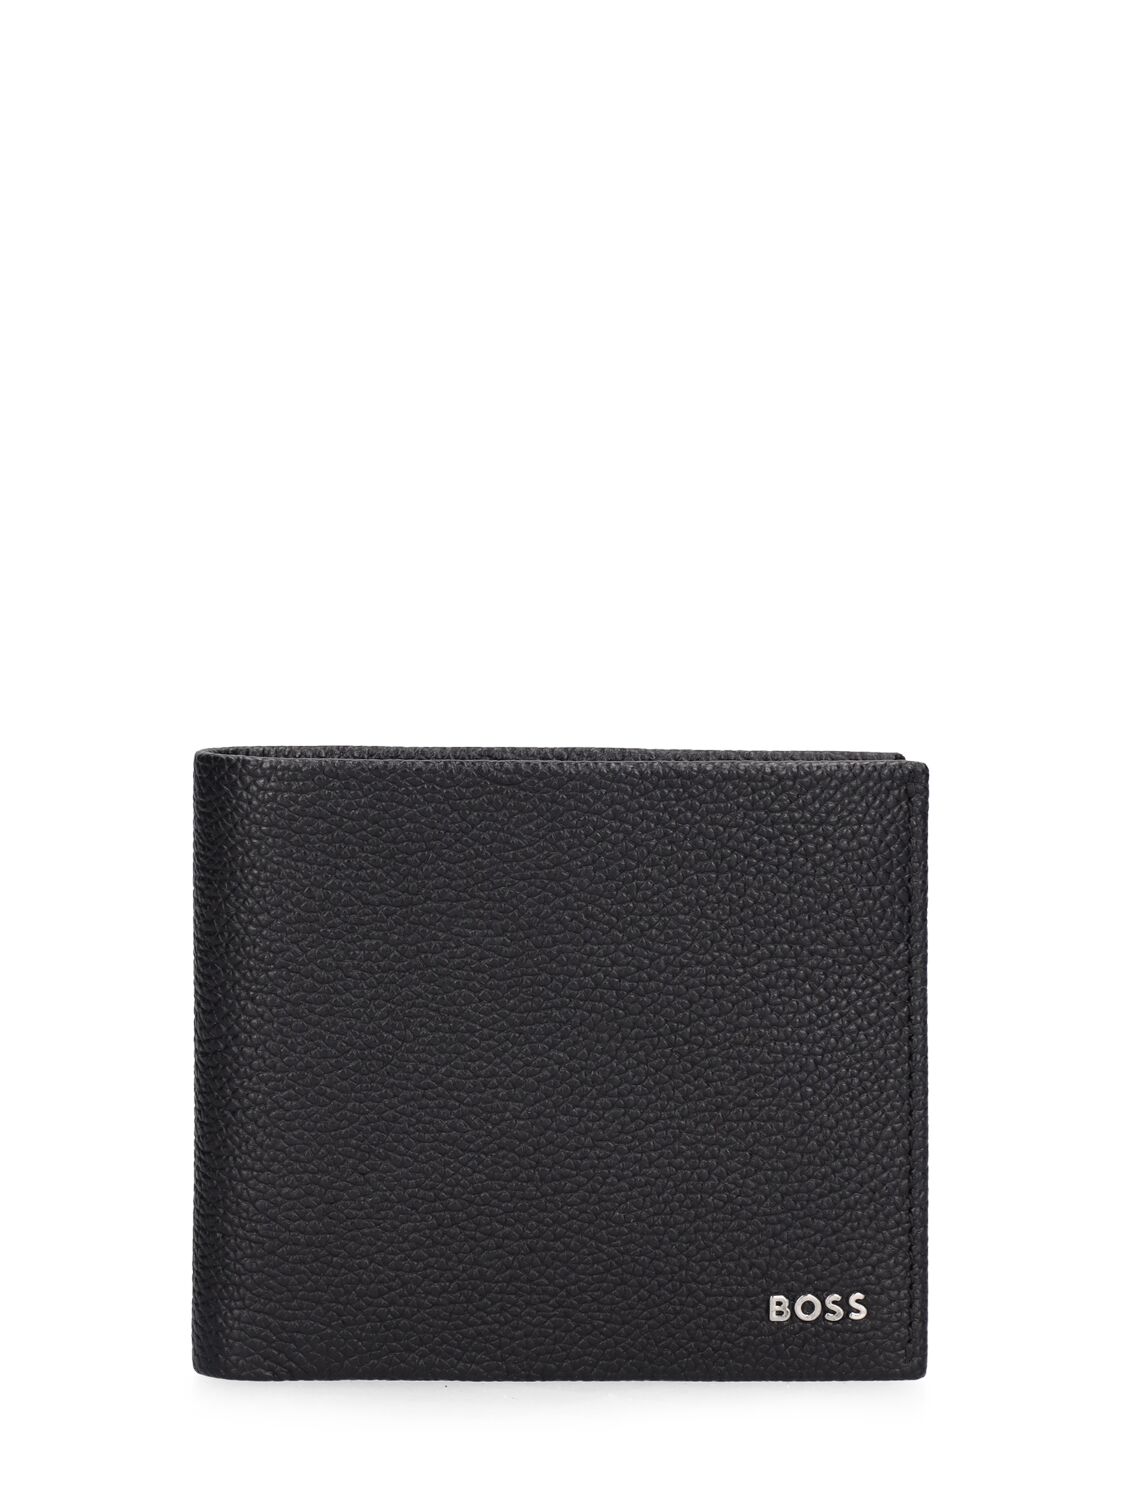 Hugo Boss Highway Billfold Wallet In Black